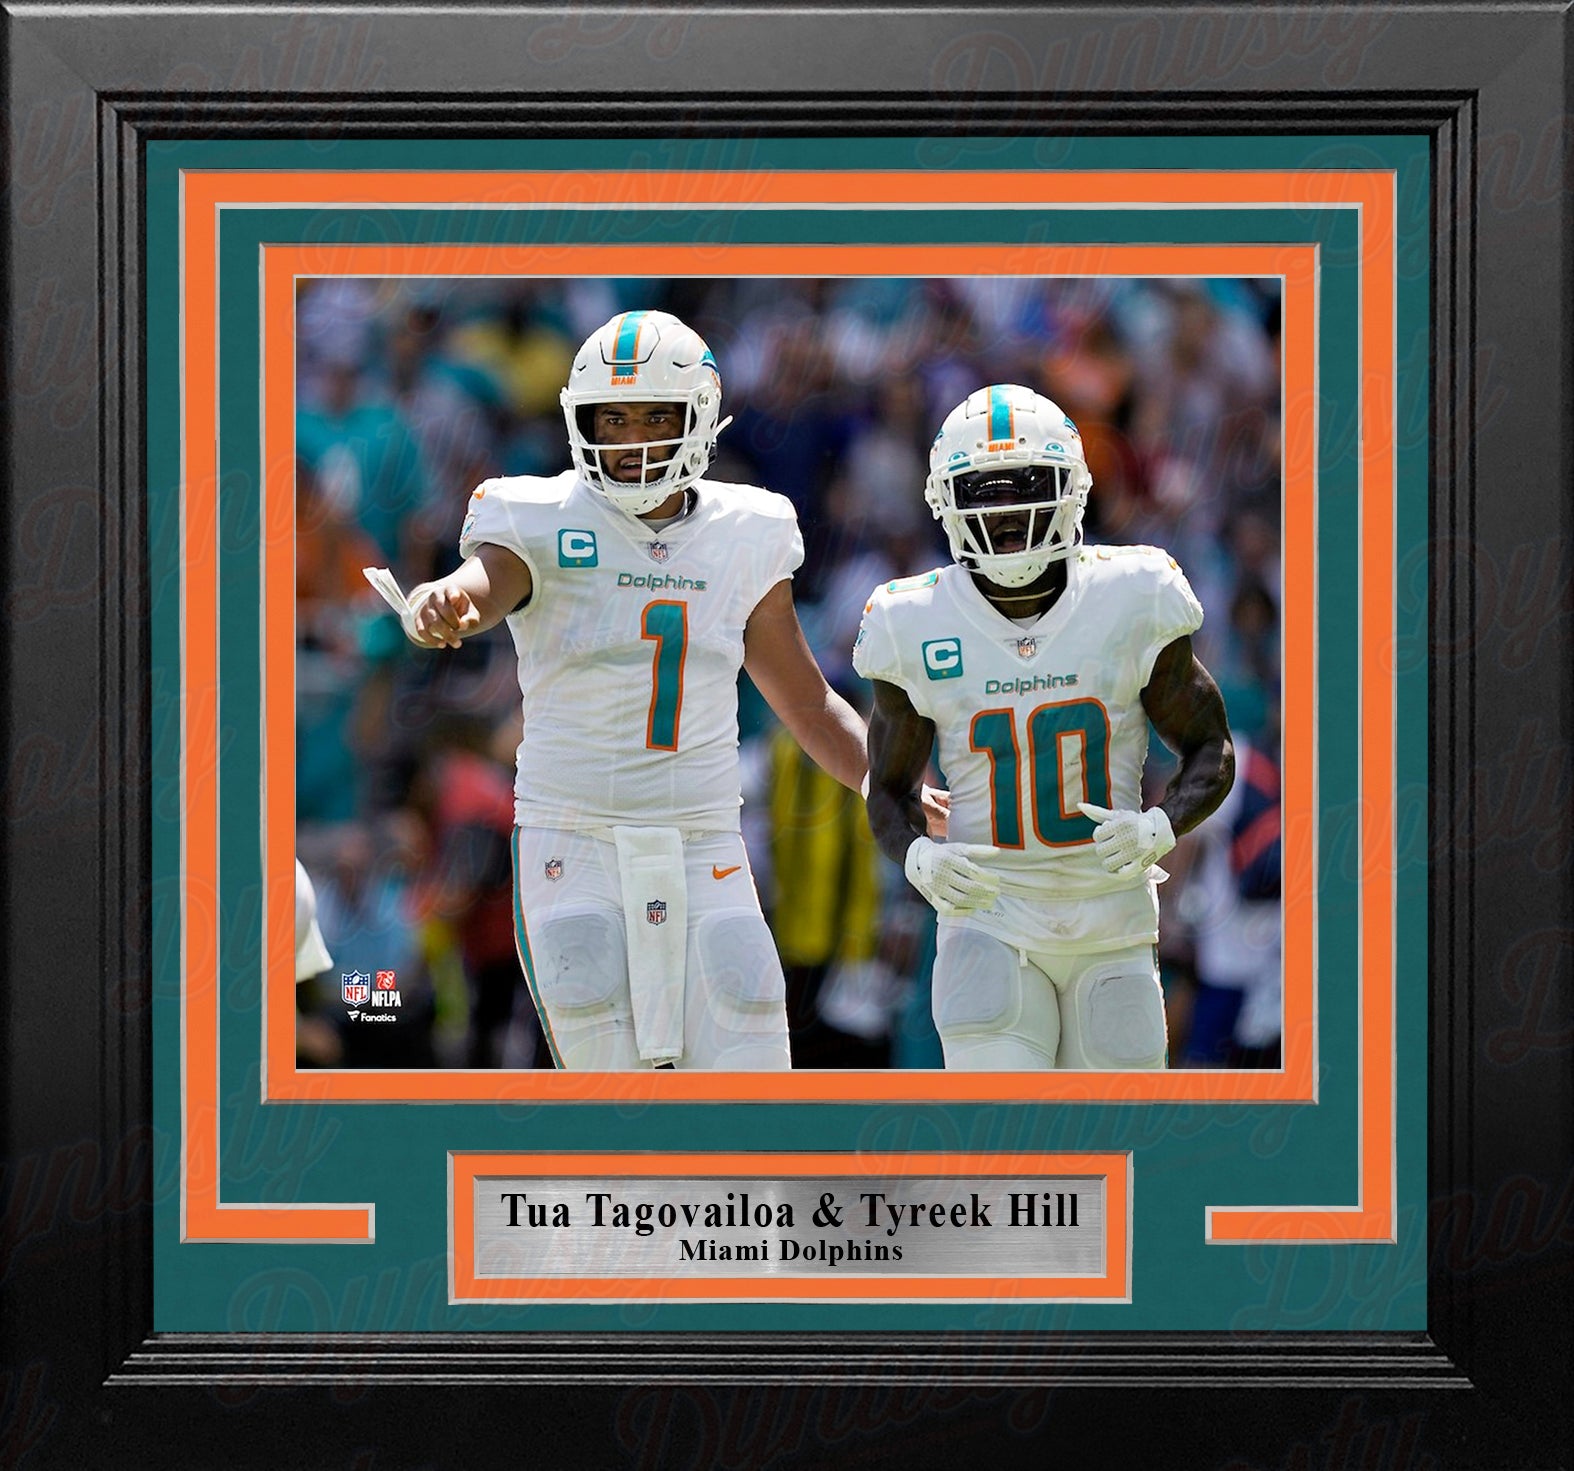 Tua Tagovailoa & Tyreek Hill Miami Dolphins 8" x 10" Framed Football Photo - Dynasty Sports & Framing 